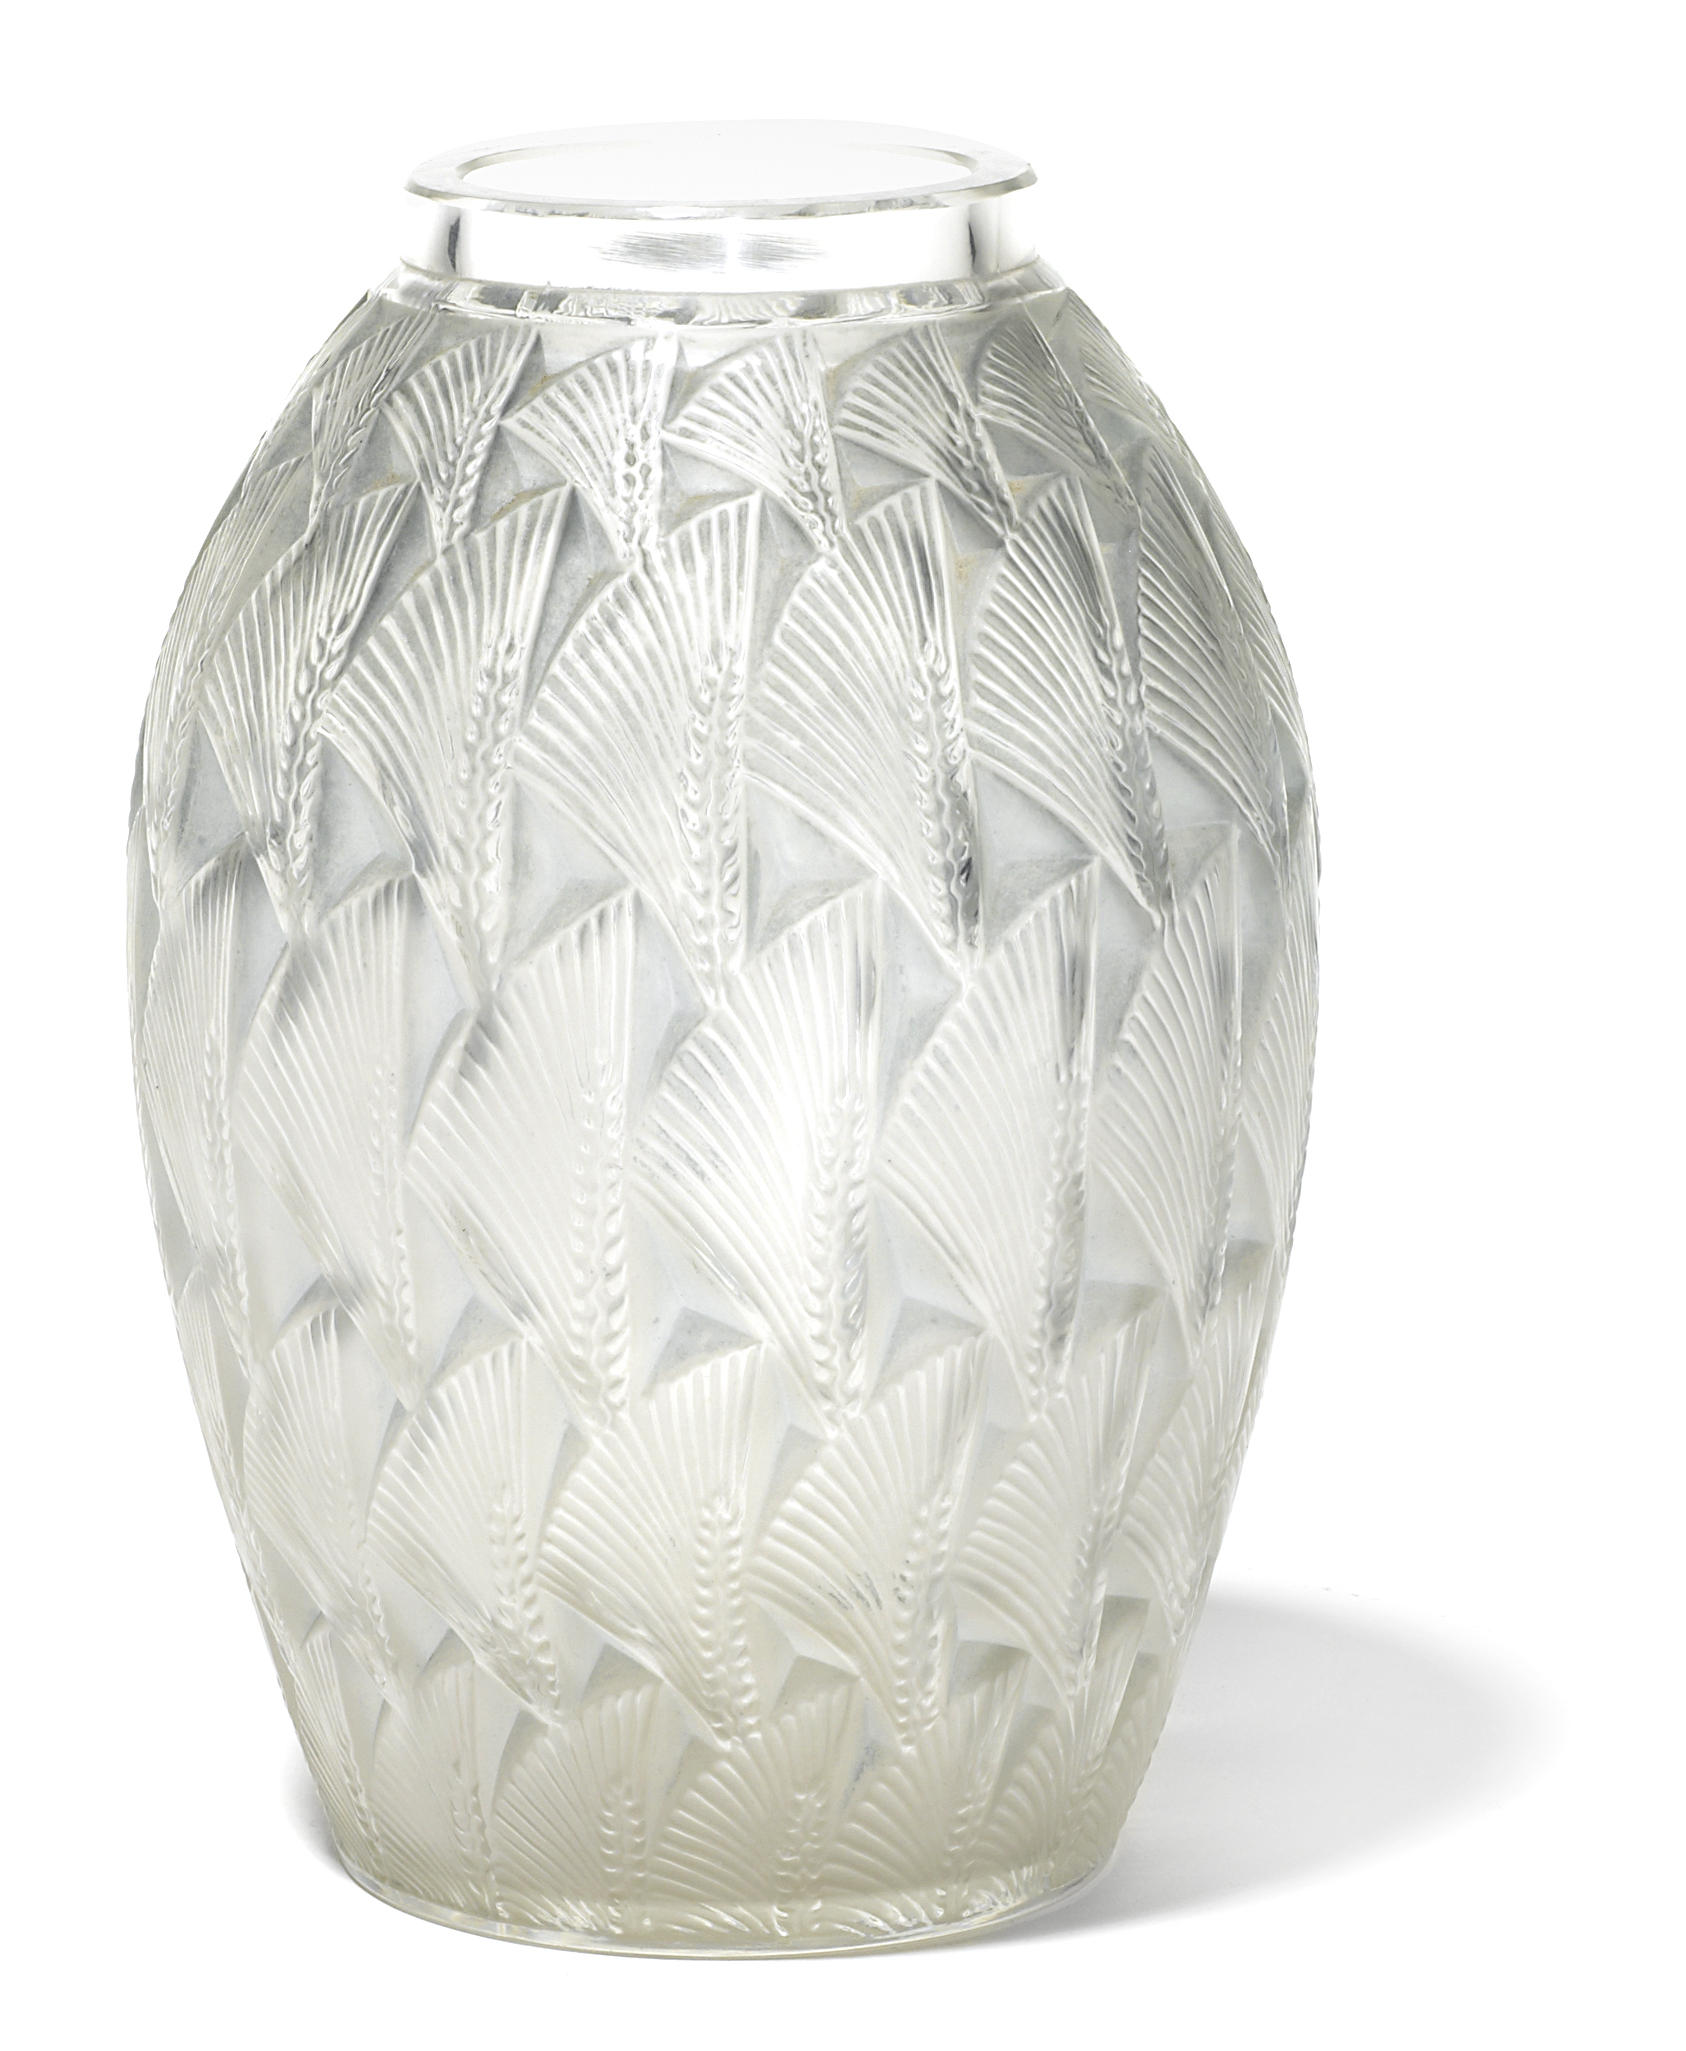 A Ren Lalique molded glass vase  12b95d